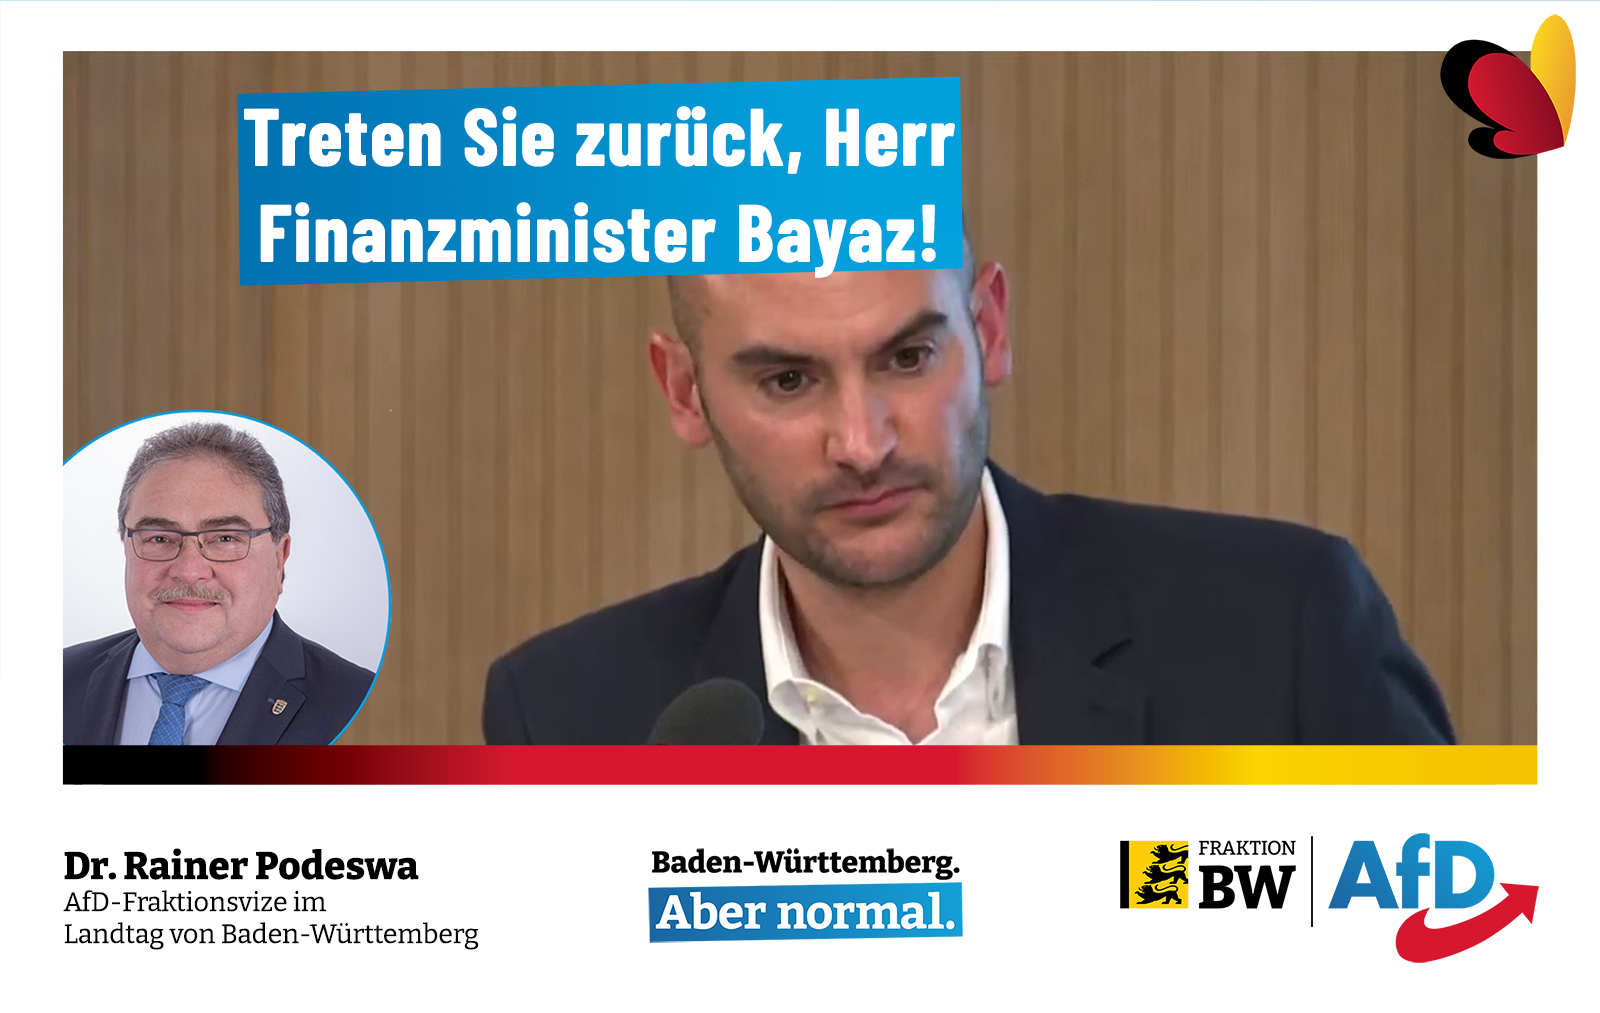 Dr. Rainer Podeswa: Treten Sie zurück, Herr Finanzminister Bayaz!